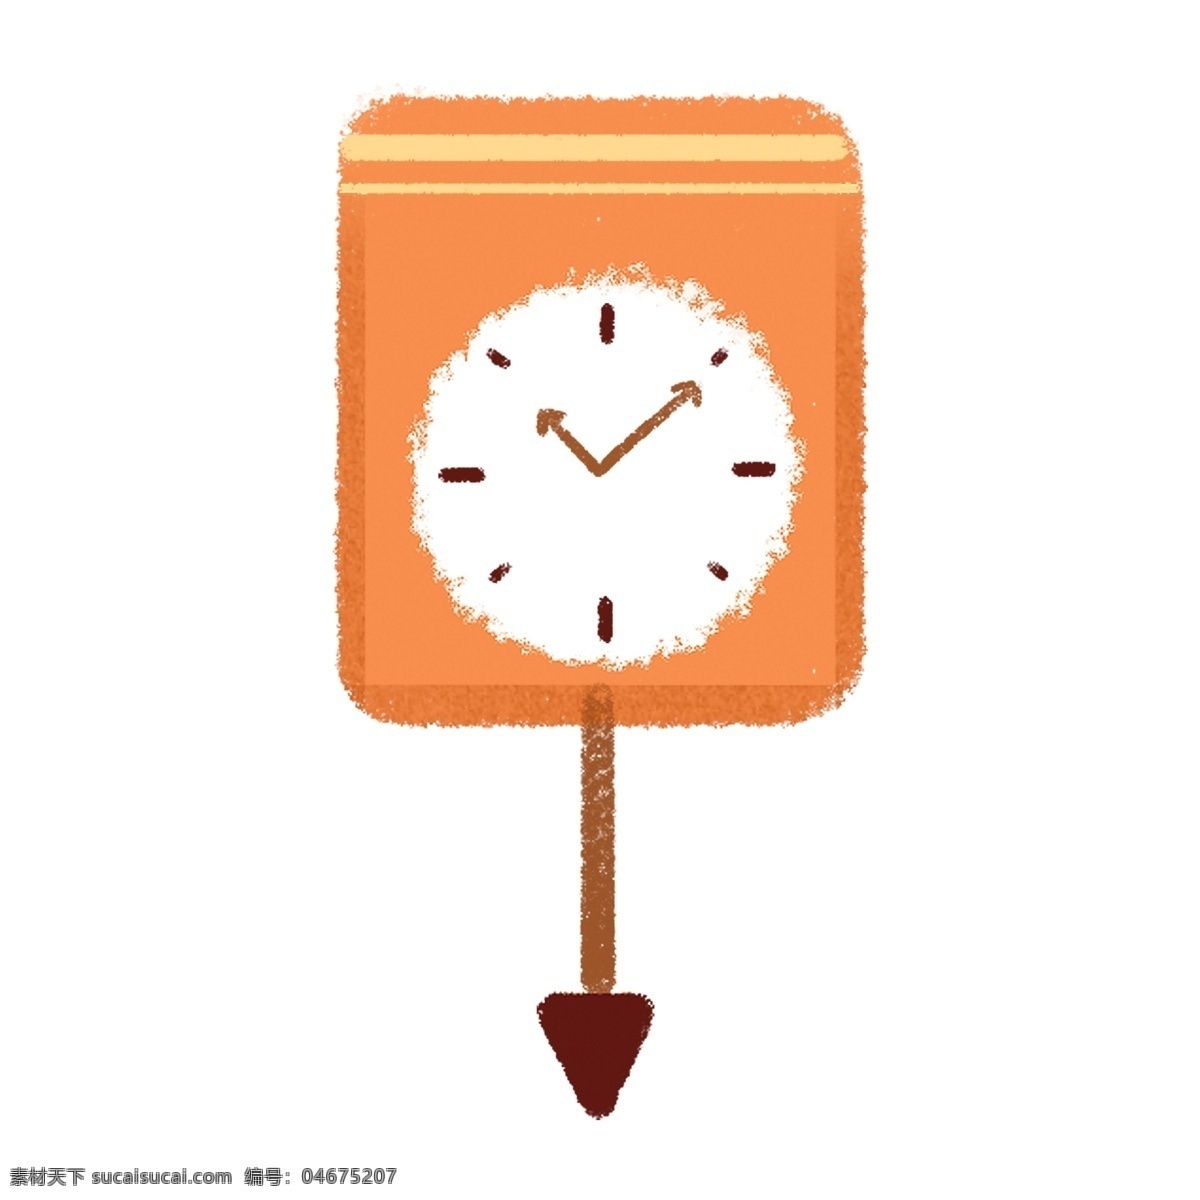 手绘 卡通 时钟 卡通手绘 卡通时钟 居家装饰 手绘时钟 橘色的钟 分钟 挂钟 指针 时间 钟表 钟